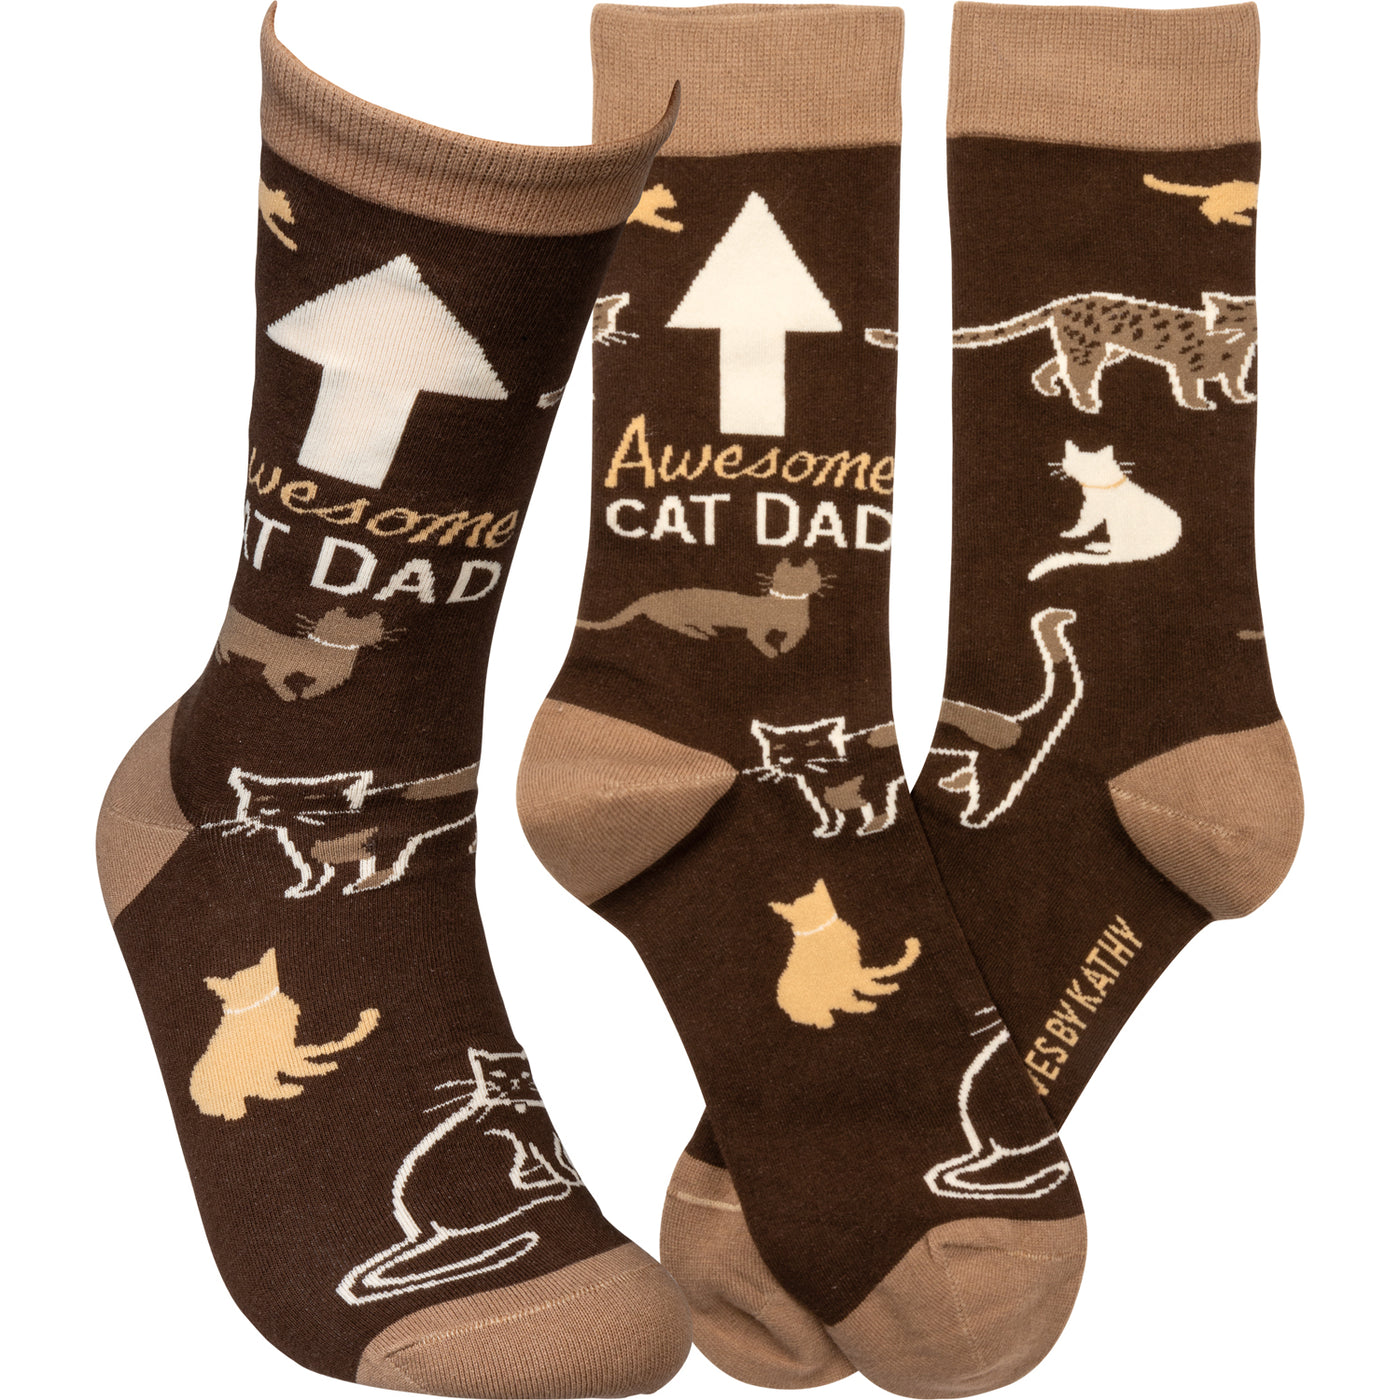 Awesome Cat Dad Fun Socks